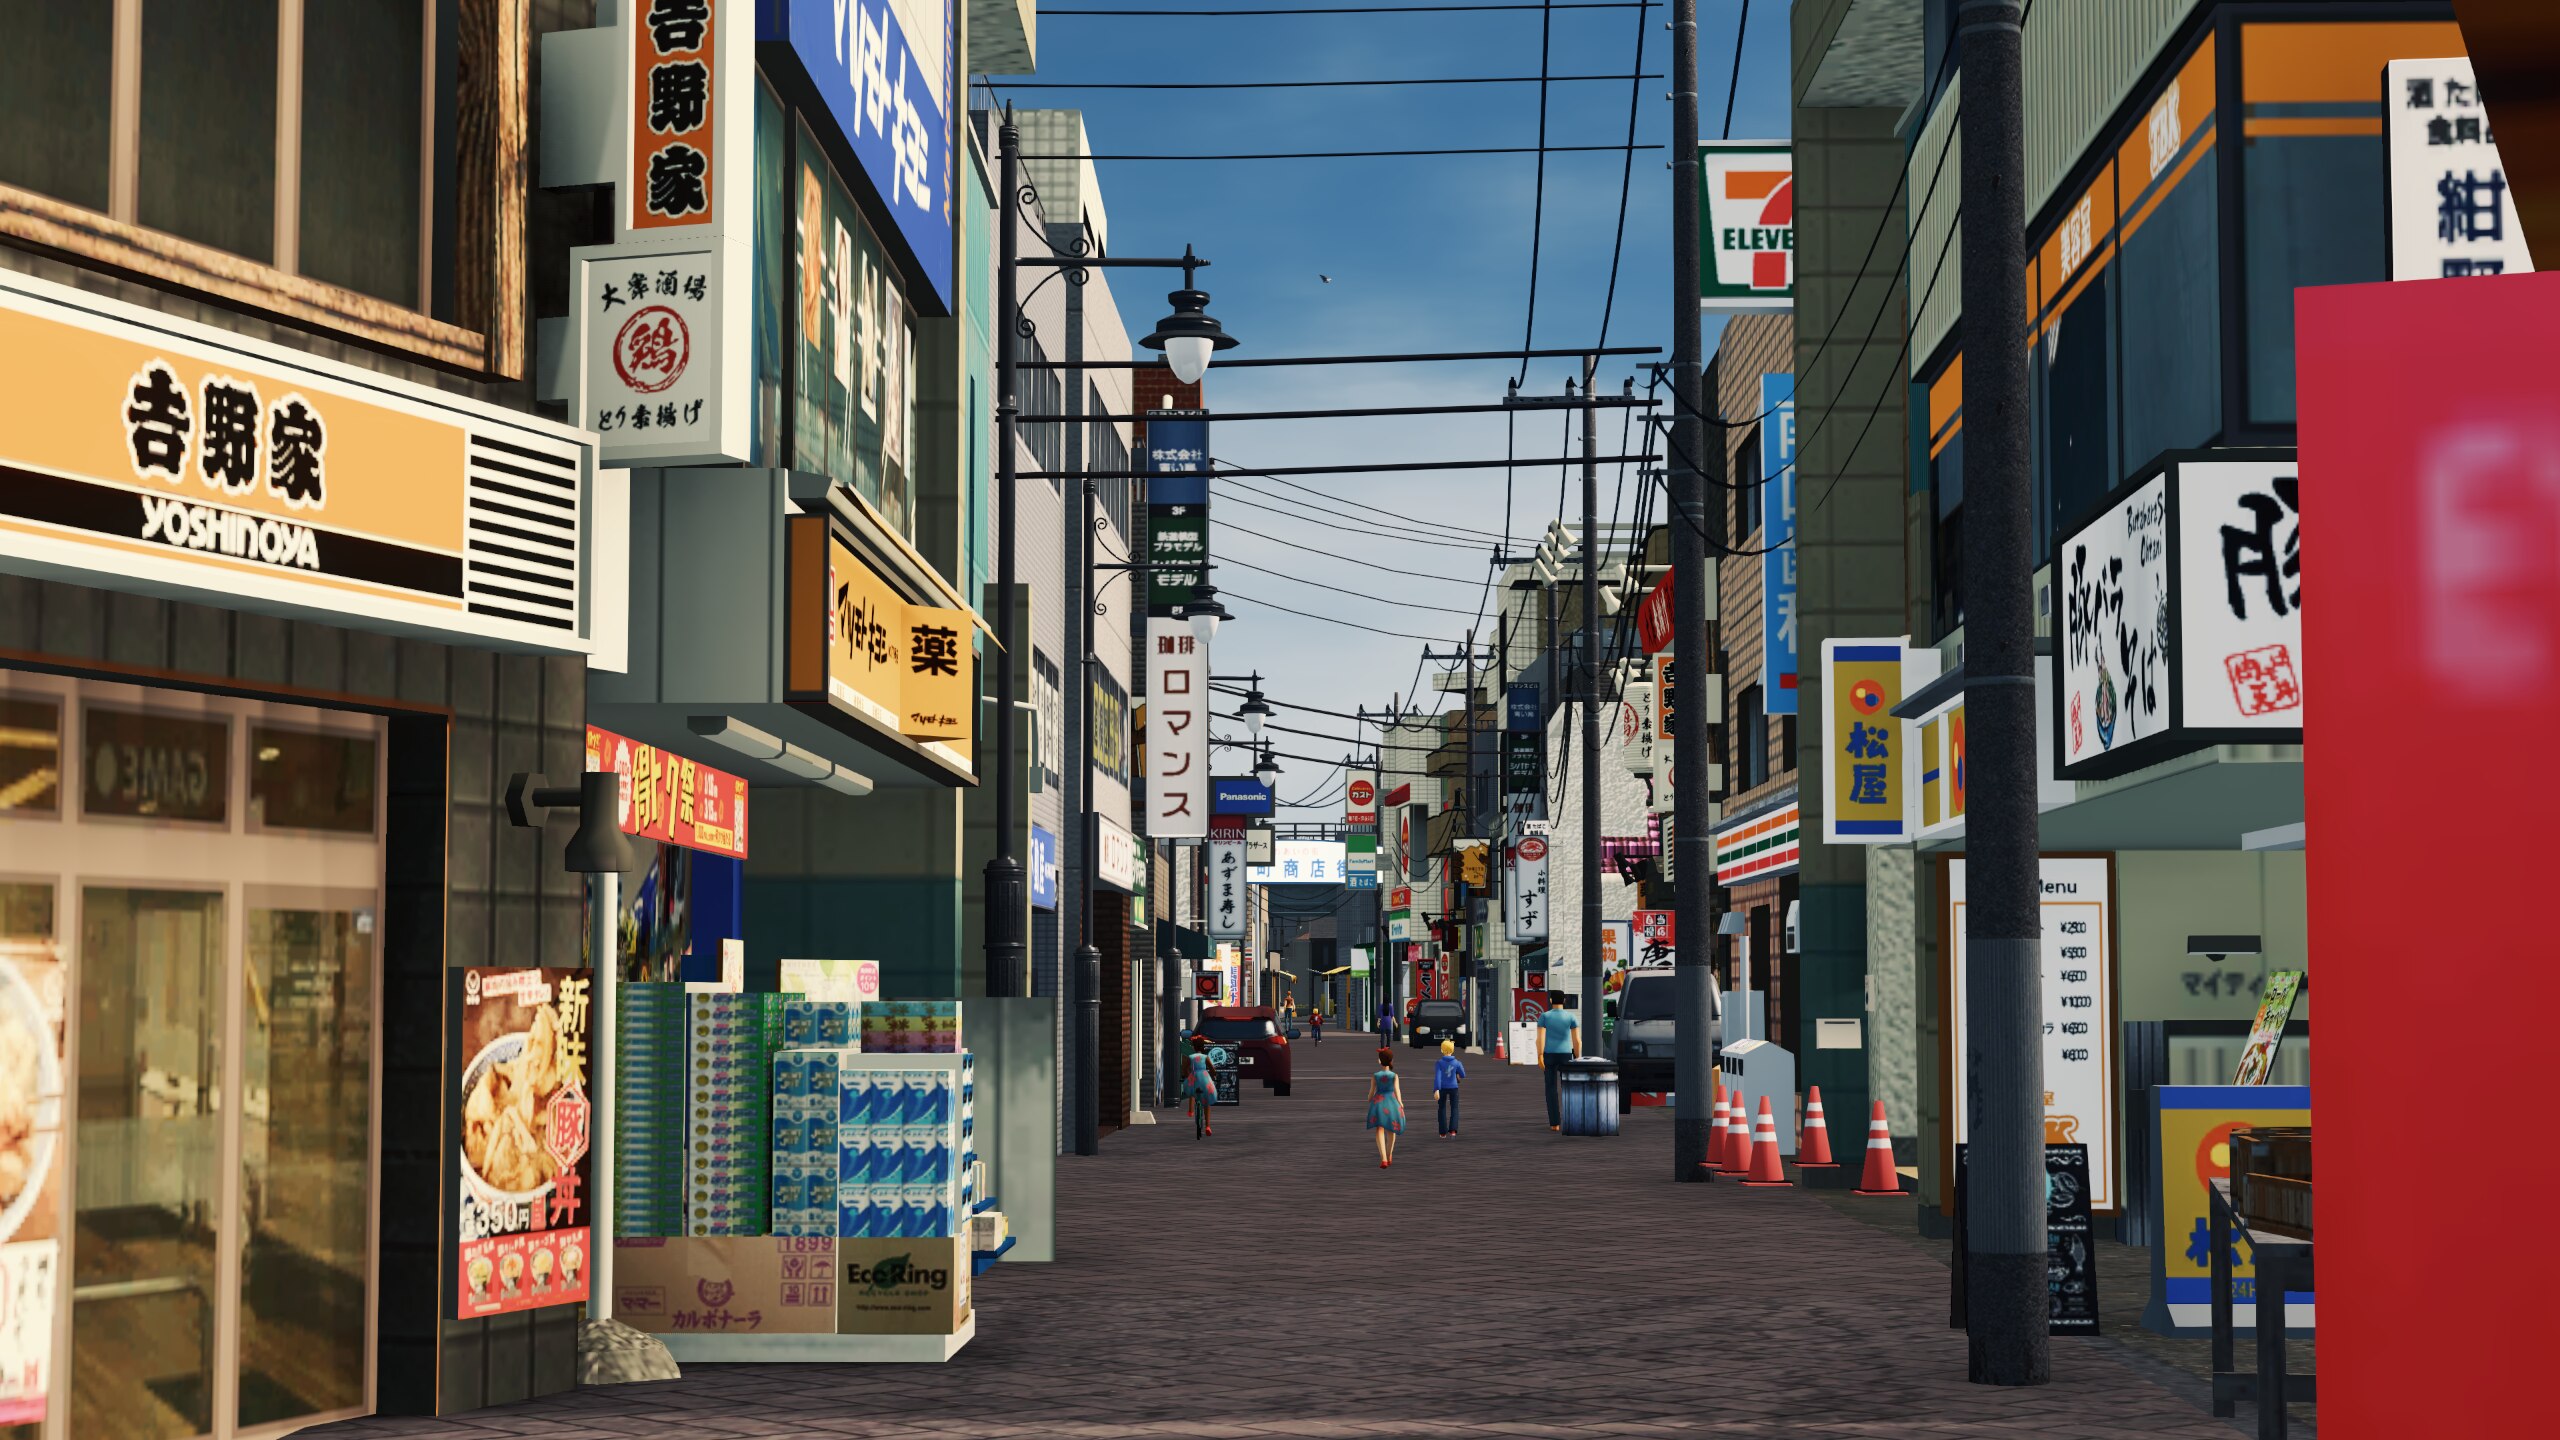 Steam 工作坊::Japan Part1